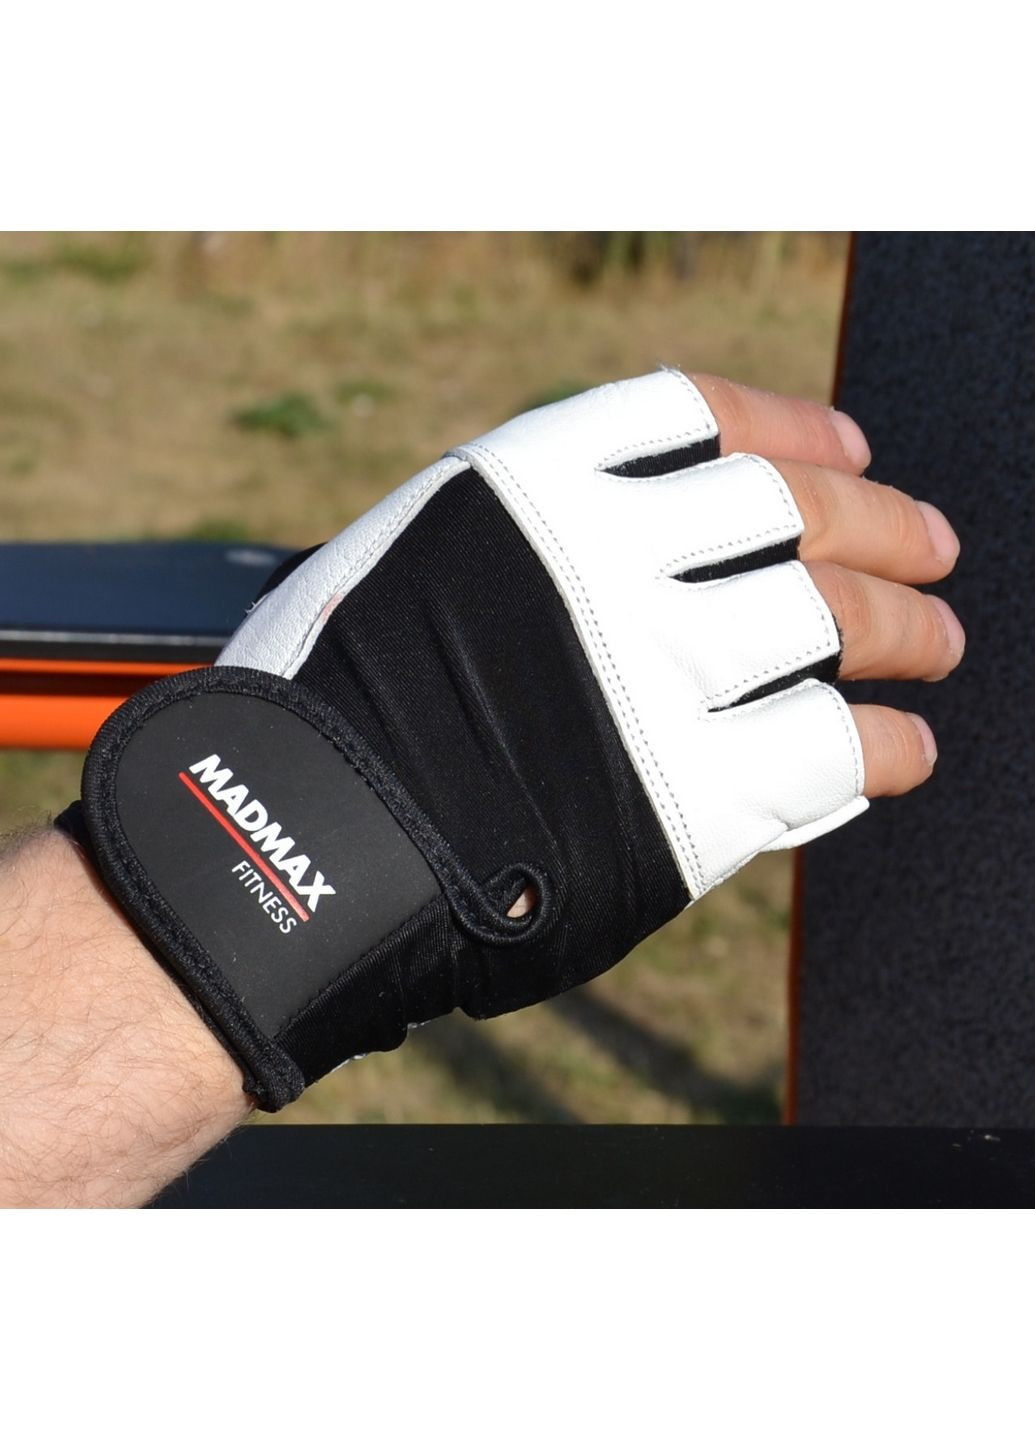 Унісекс рукавички для фітнесу XXL Mad Max (279321249)